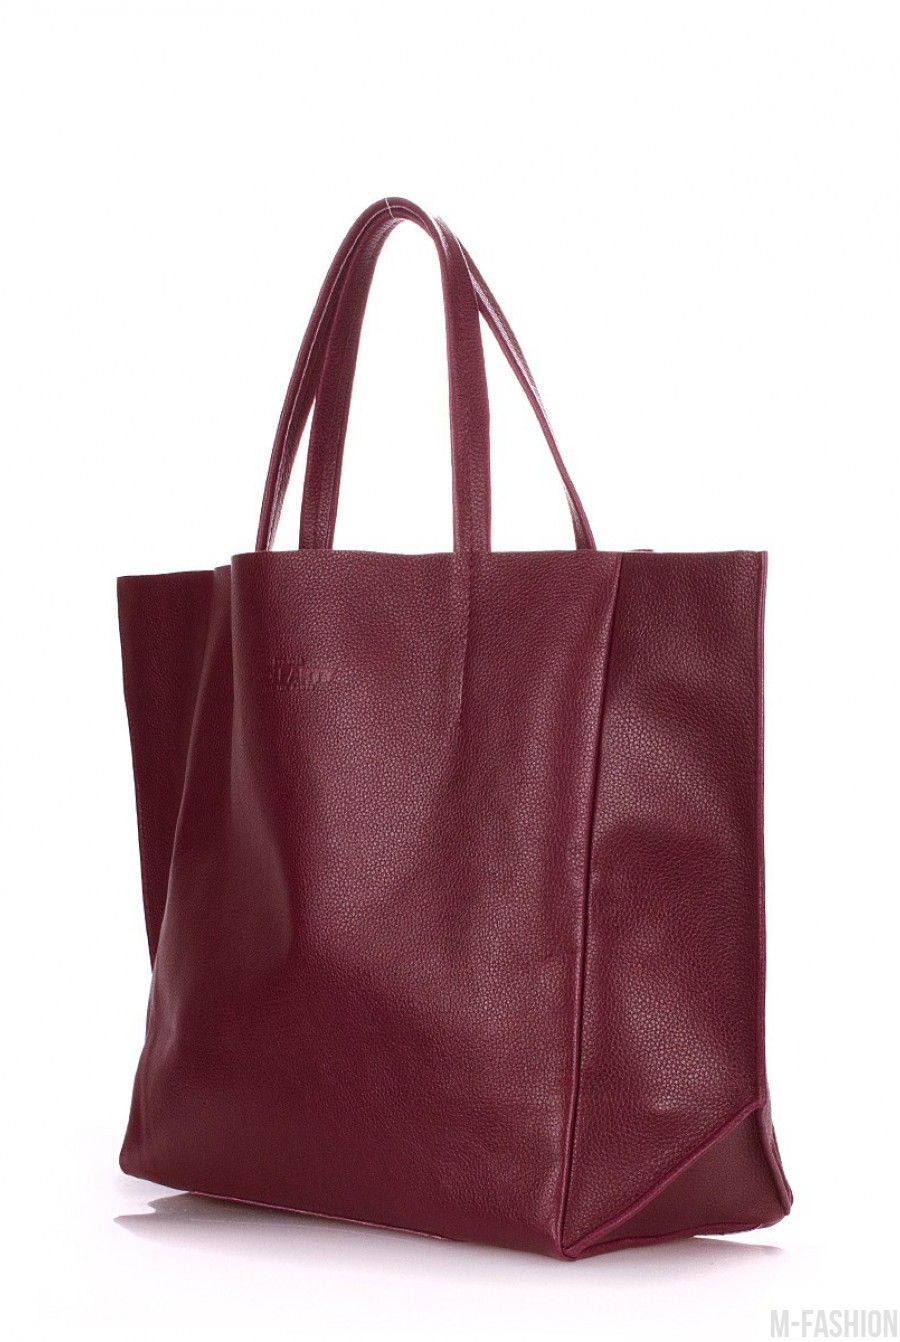 Кожаная бордовая сумка Soho классического дизайна- Фото 2